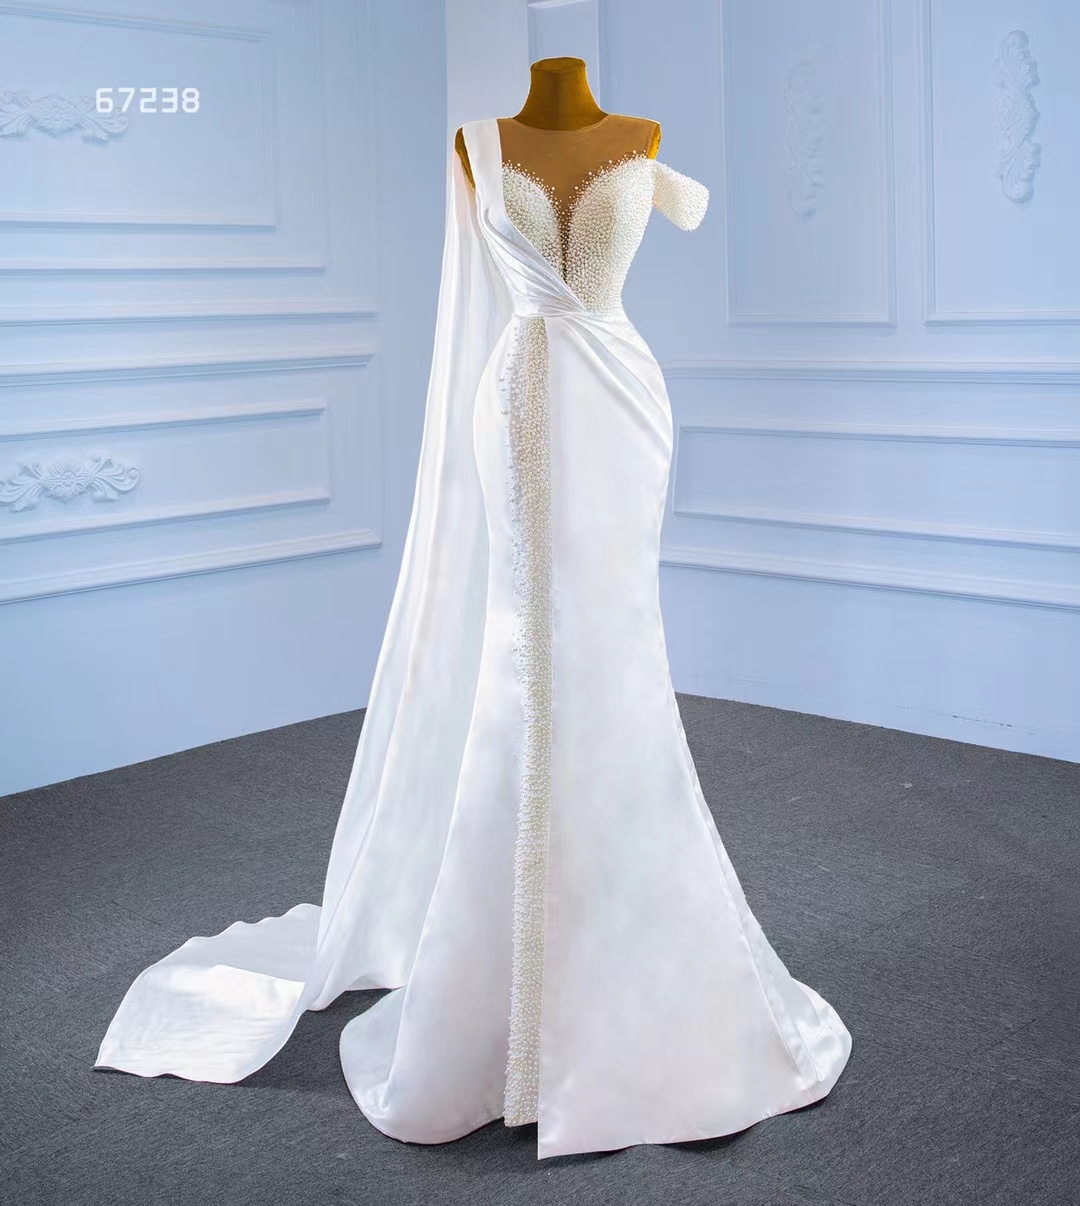 Lyxig bröllopsklänning pärlor en axel sjöjungfru svans brudklänning SM67238